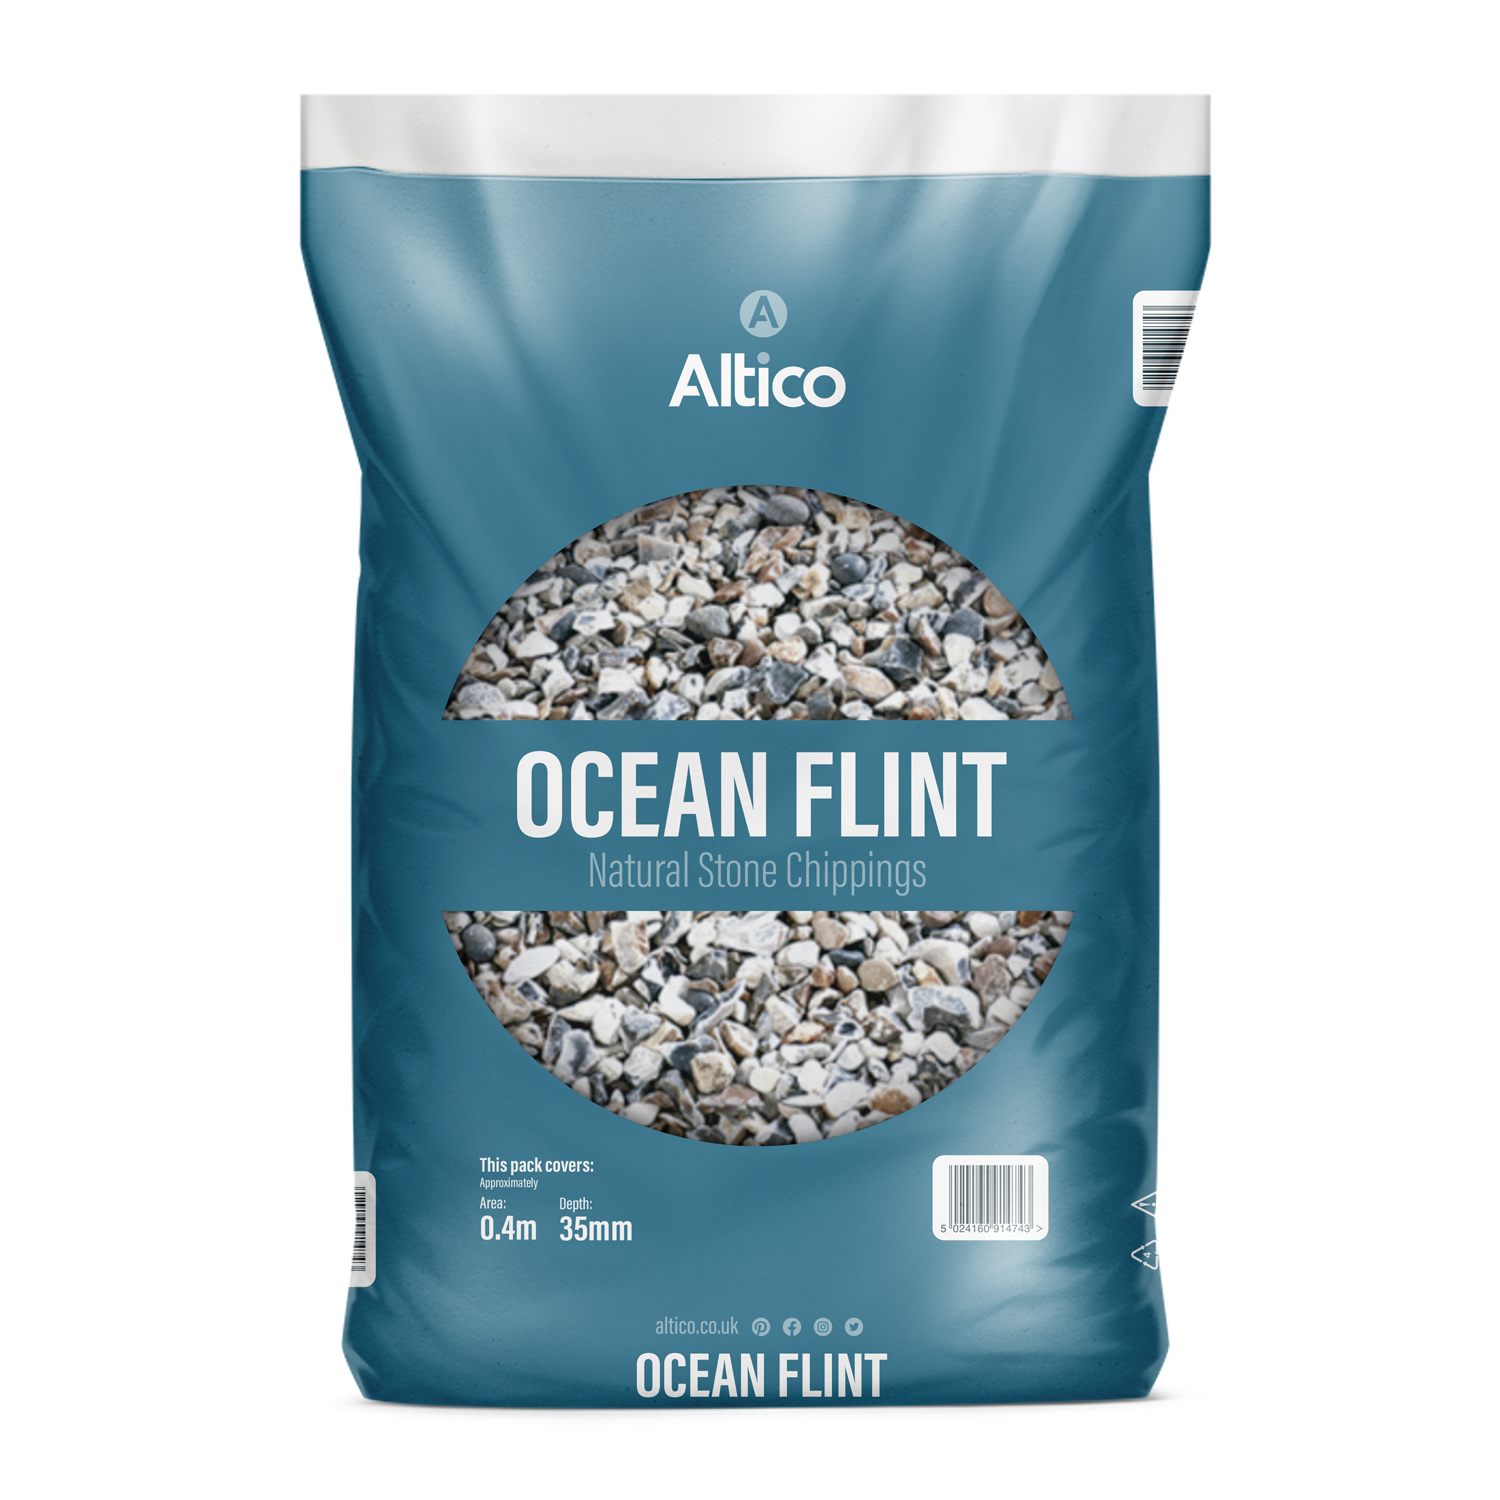 A10004 Ocean Flint Packaging